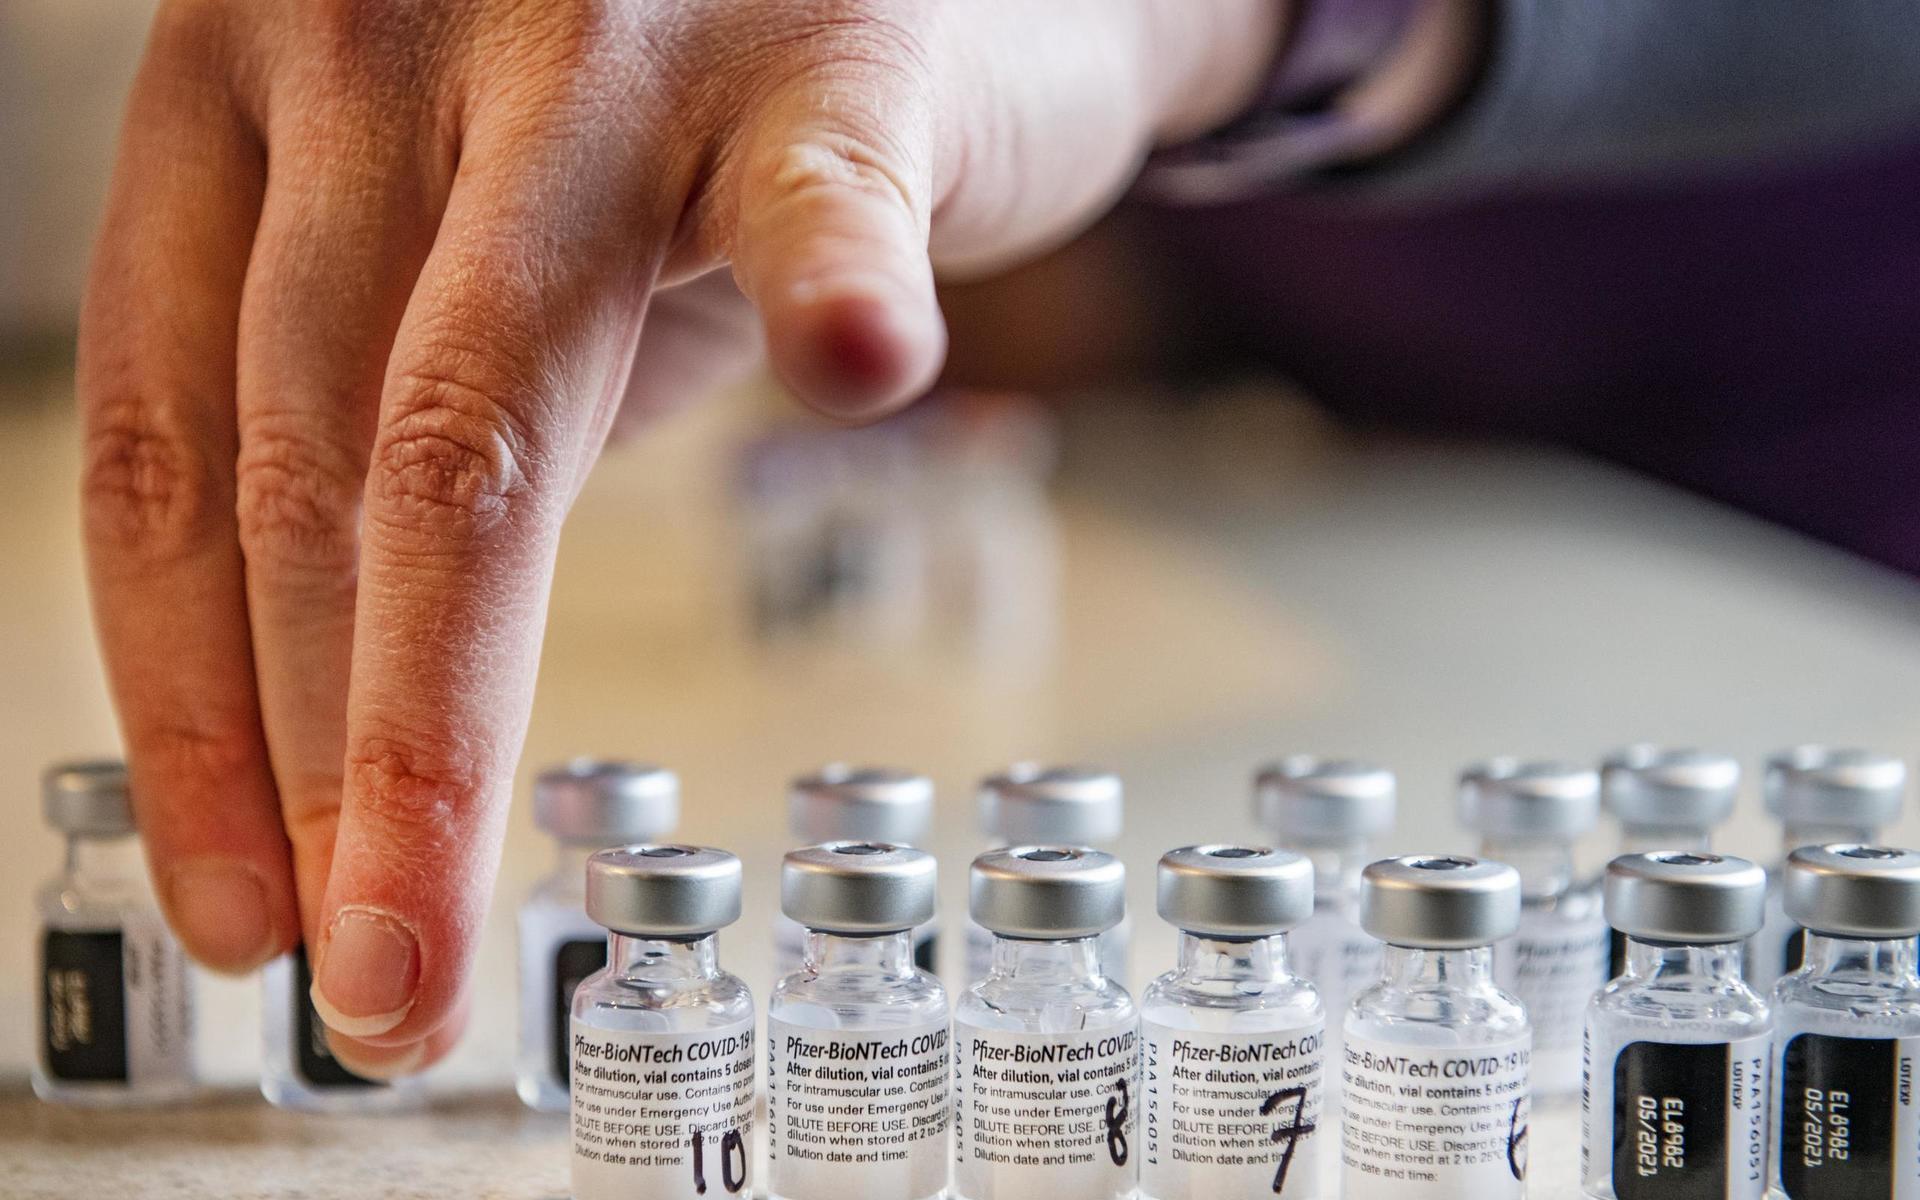 Sverige har beställt ungefär 7,6 miljoner doser av Pfizer/Biontechs vaccin. 